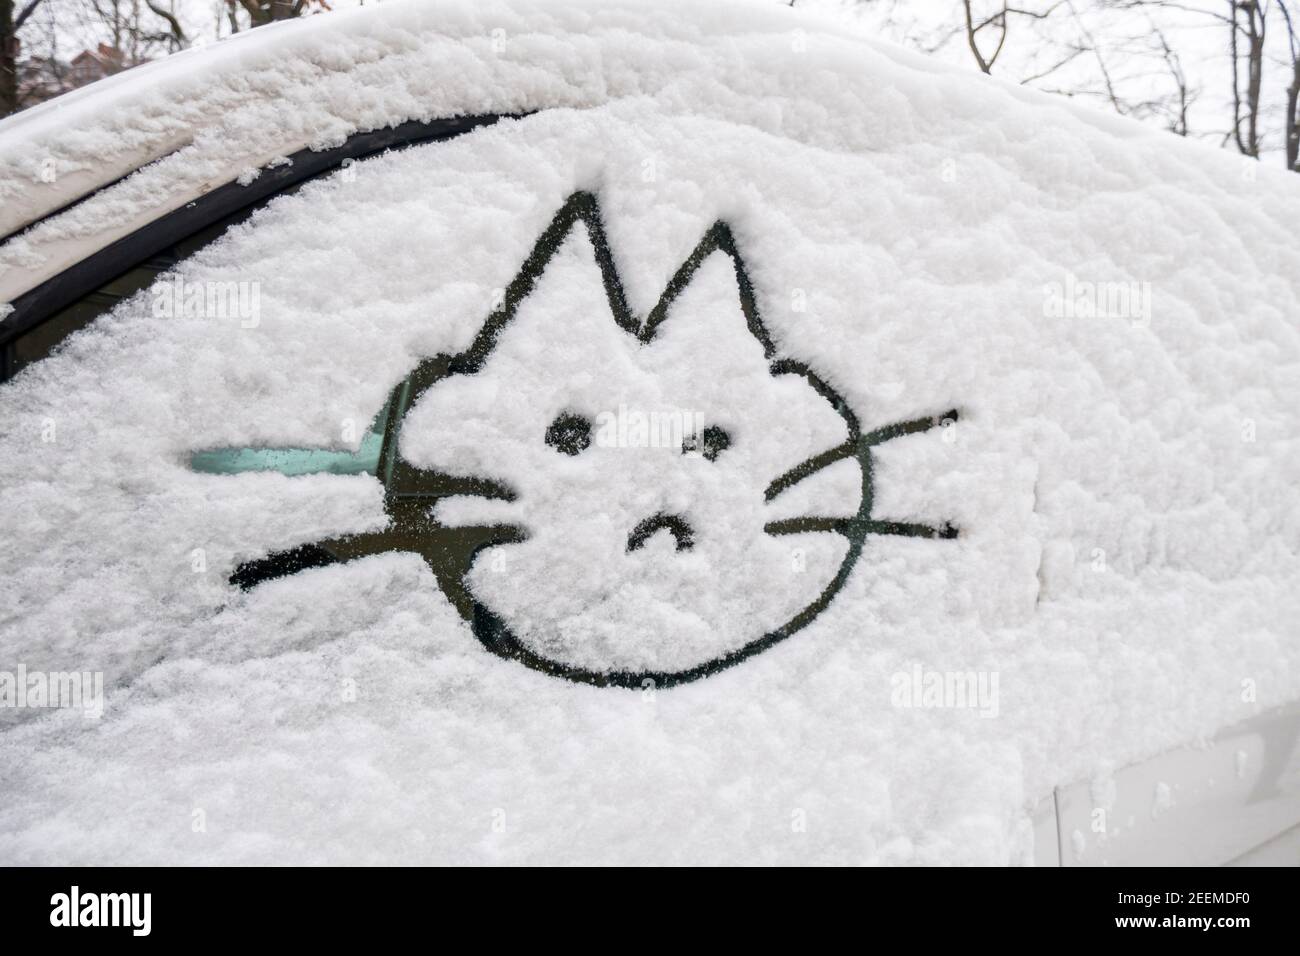 Wintereinbruch in Berlin im Februar 2021 . Verschneite Autos in Kreuzberg, Katze in Schnee auf Autoscheibe gemalt. Kältewelle, Russenpeitsche, eisige Stock Photo